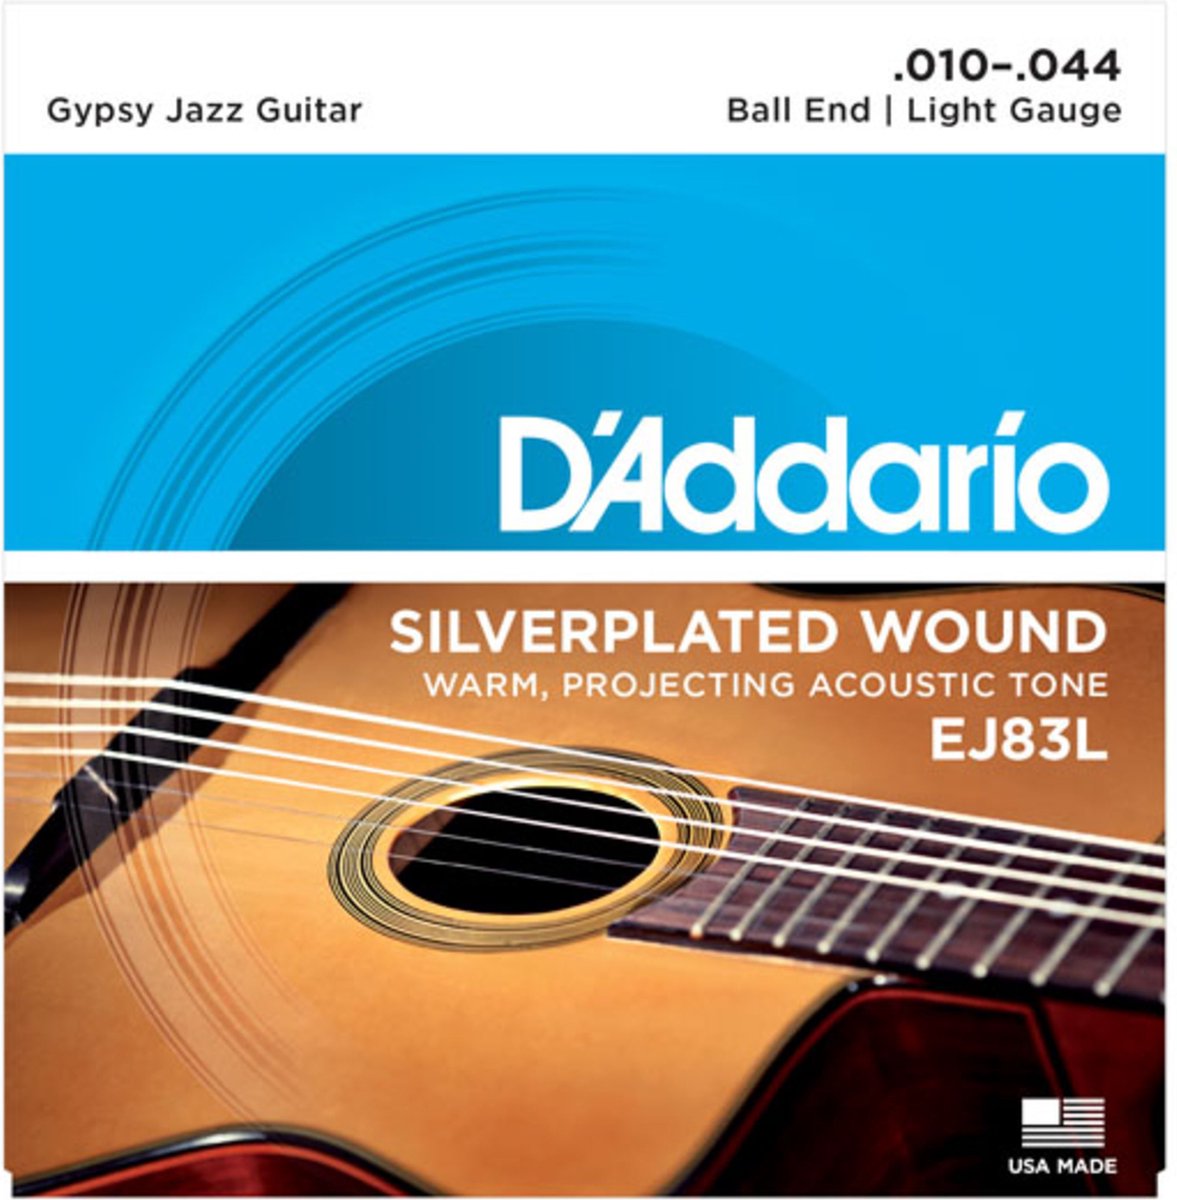 D'Addario Gypsy Jazz snaren EJ83L 10-44 zilverplated wound - Akoestische gitaarsnaren